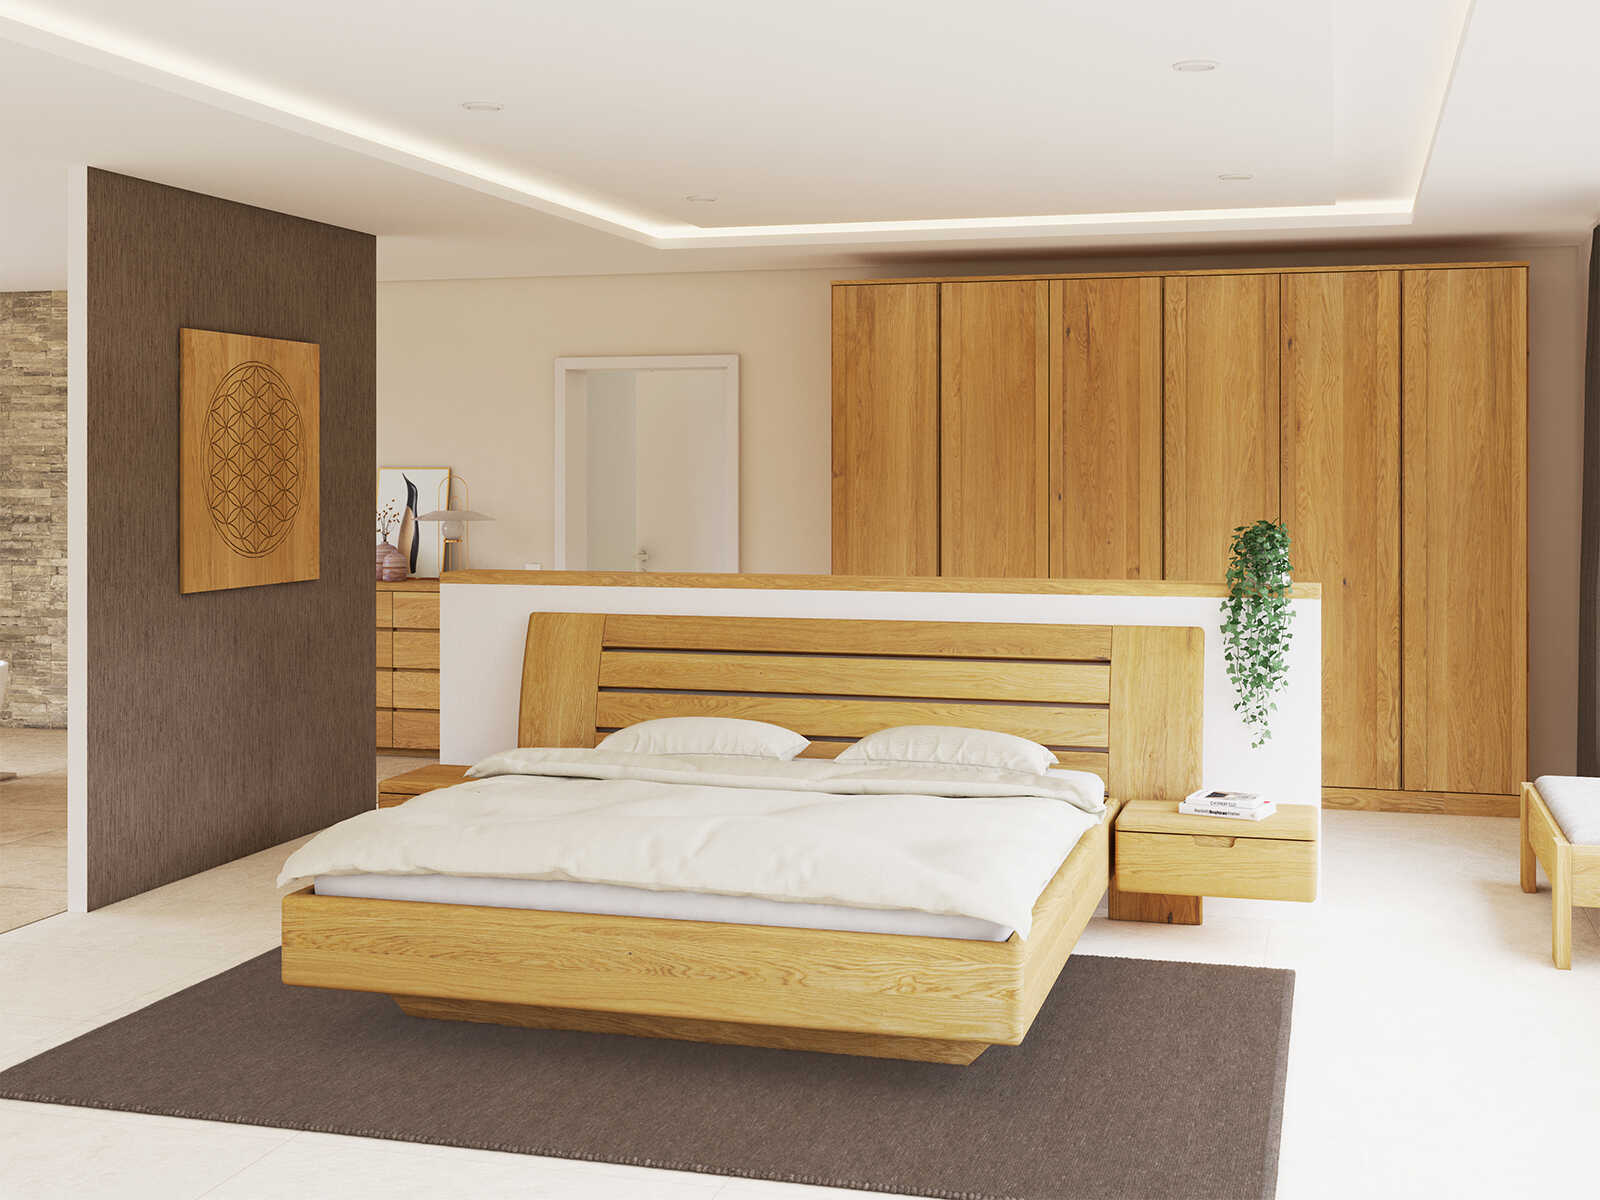 Schlafzimmer mit Bett „Bettina“ aus Eiche in 180 x 200 cm, mit zwei Nachttische (60 cm breit)